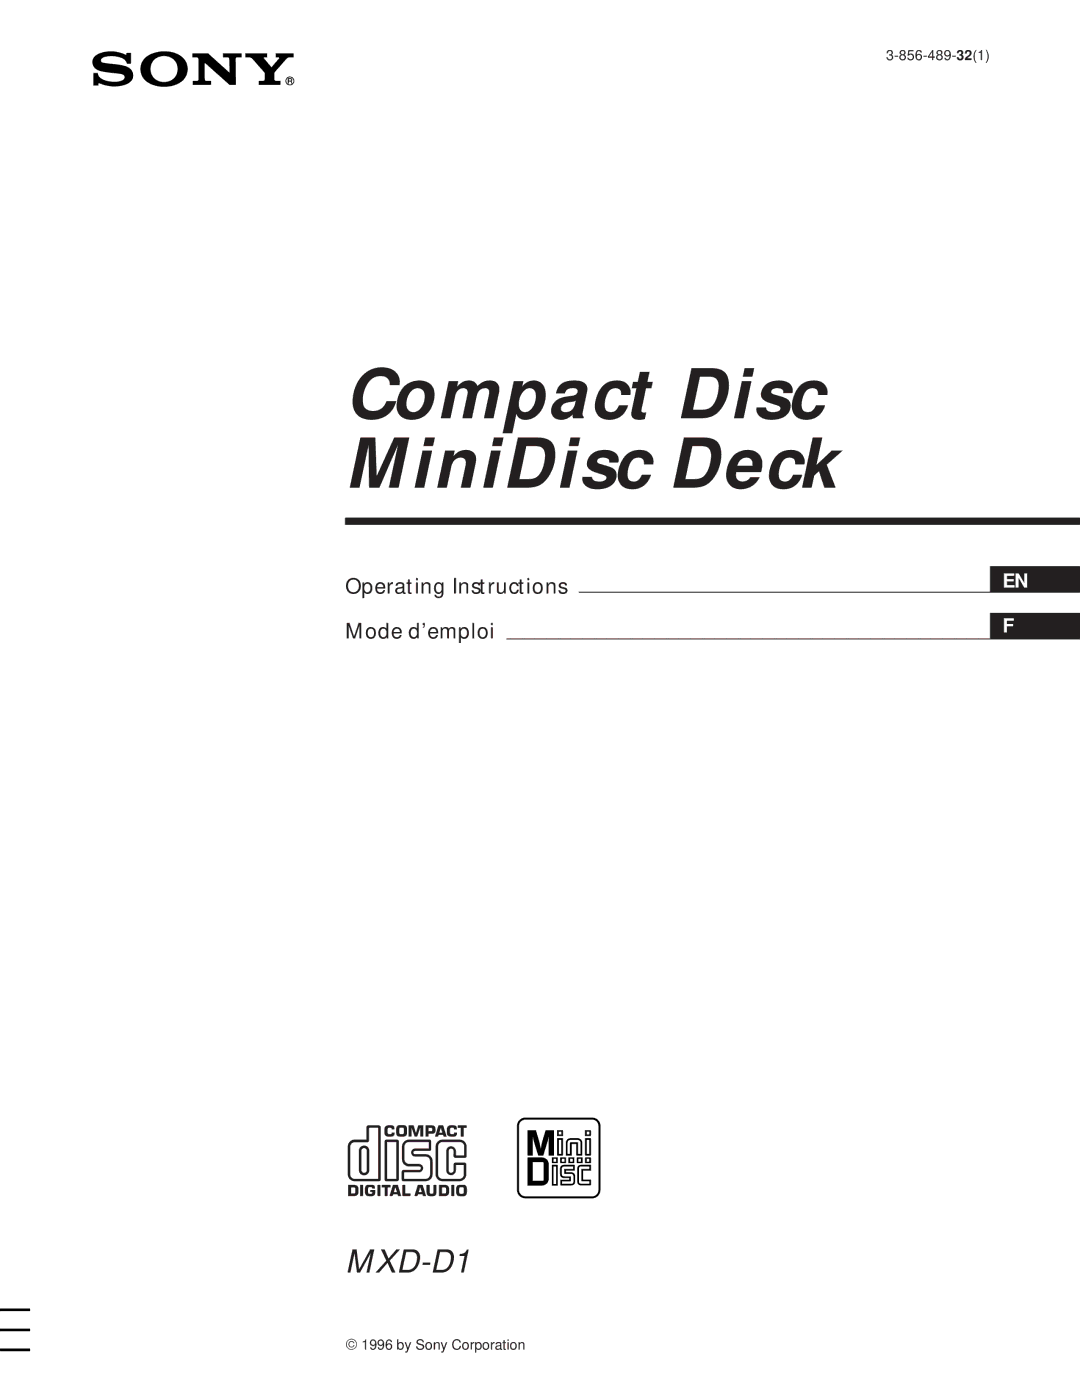 Sony MXD-D1 manual Compact Disc MiniDisc Deck 